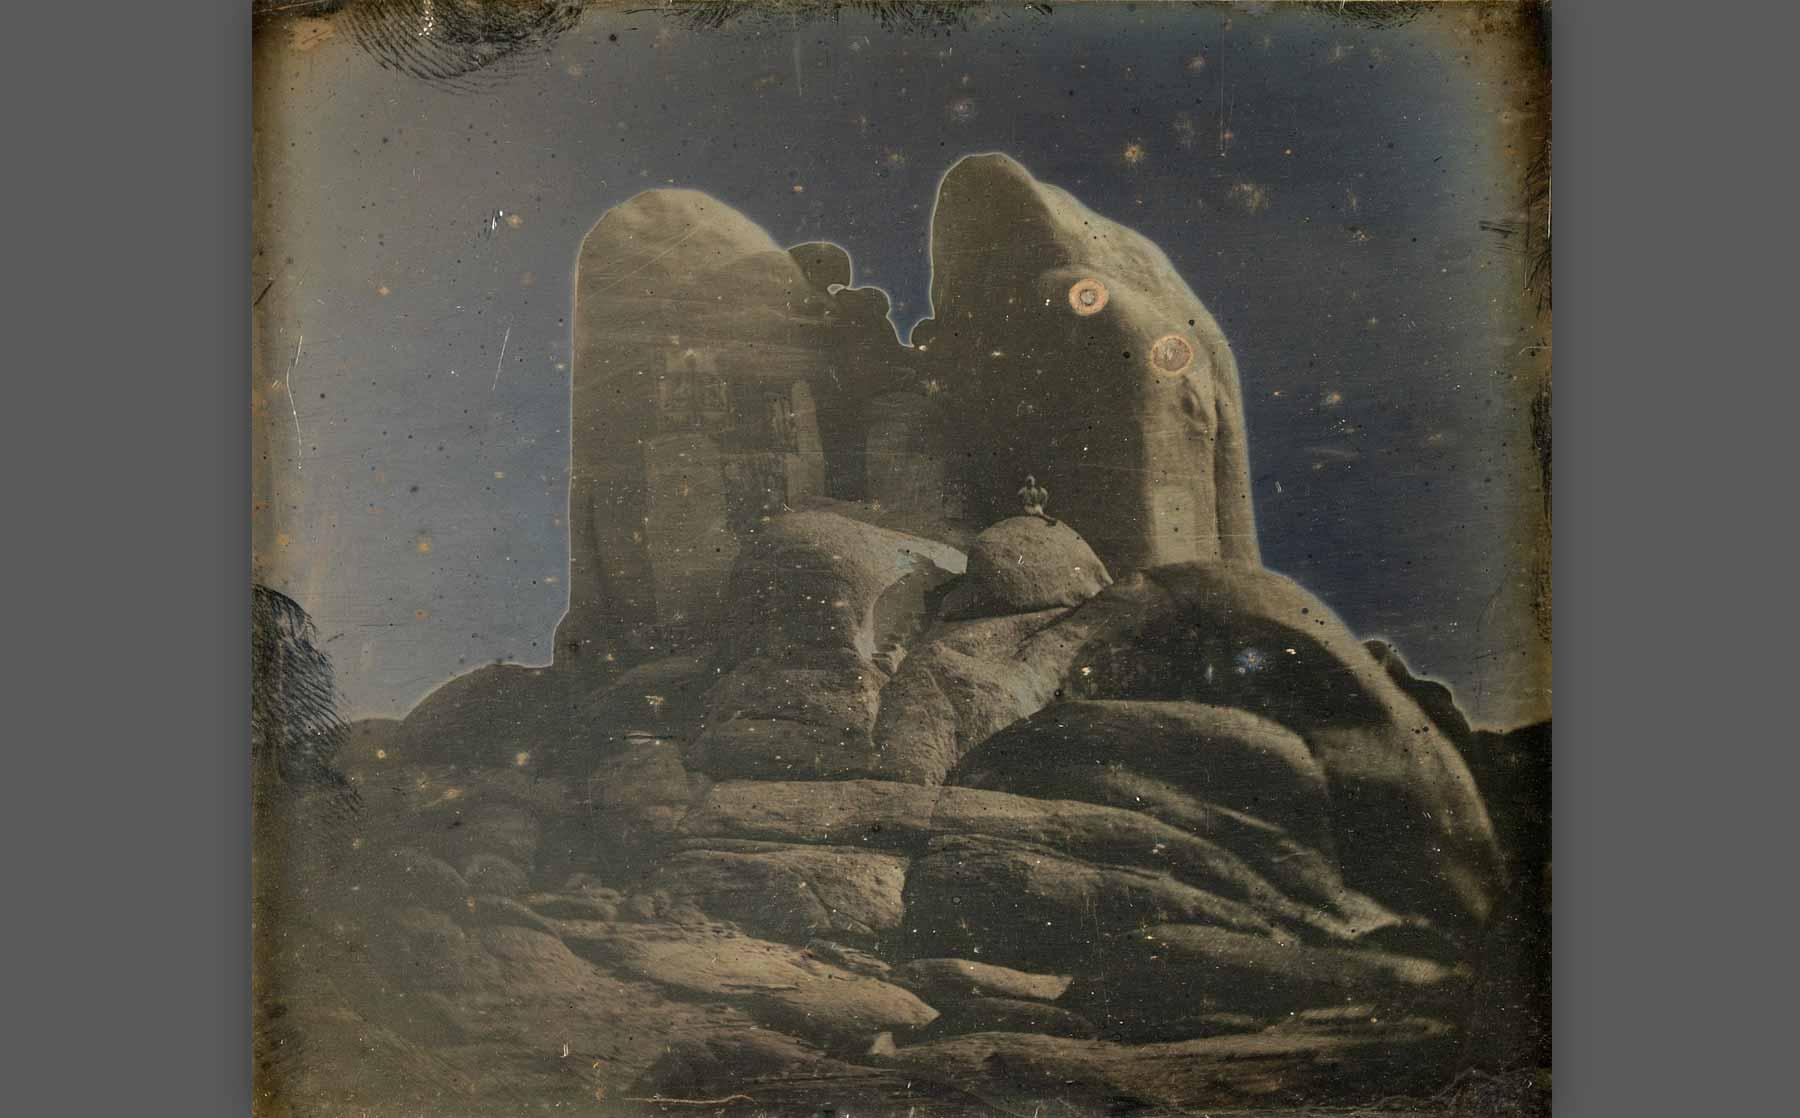 Girault de Prangey, “Rocks, Philae” (1844), daguerreotype.